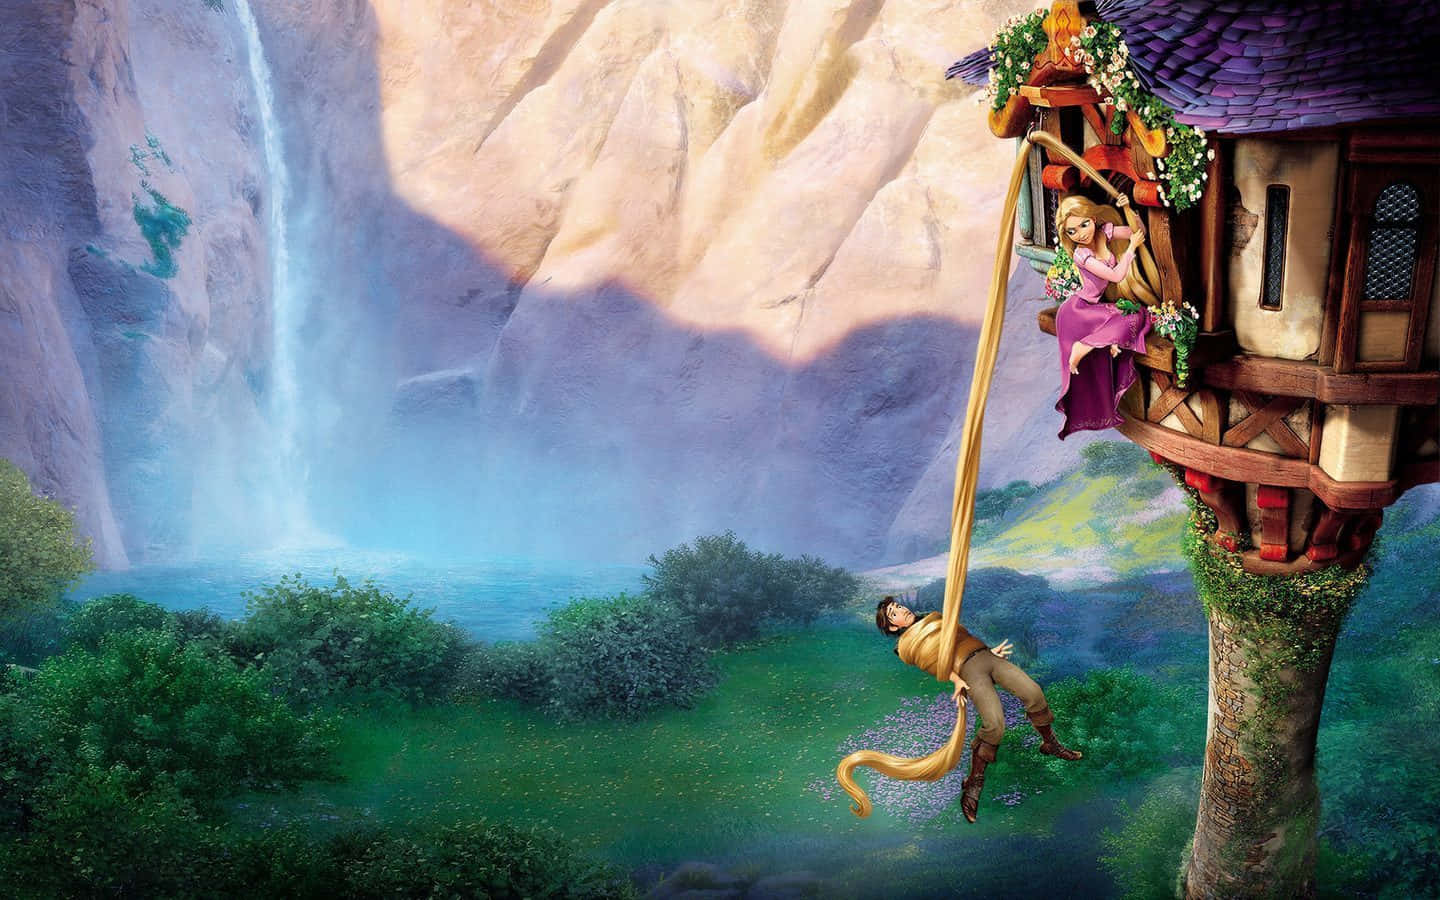 Rapunzelcontemplando Un Reino Vibrante Y Mágico Con Su Largo Cabello Dorado Ondeando Al Viento.